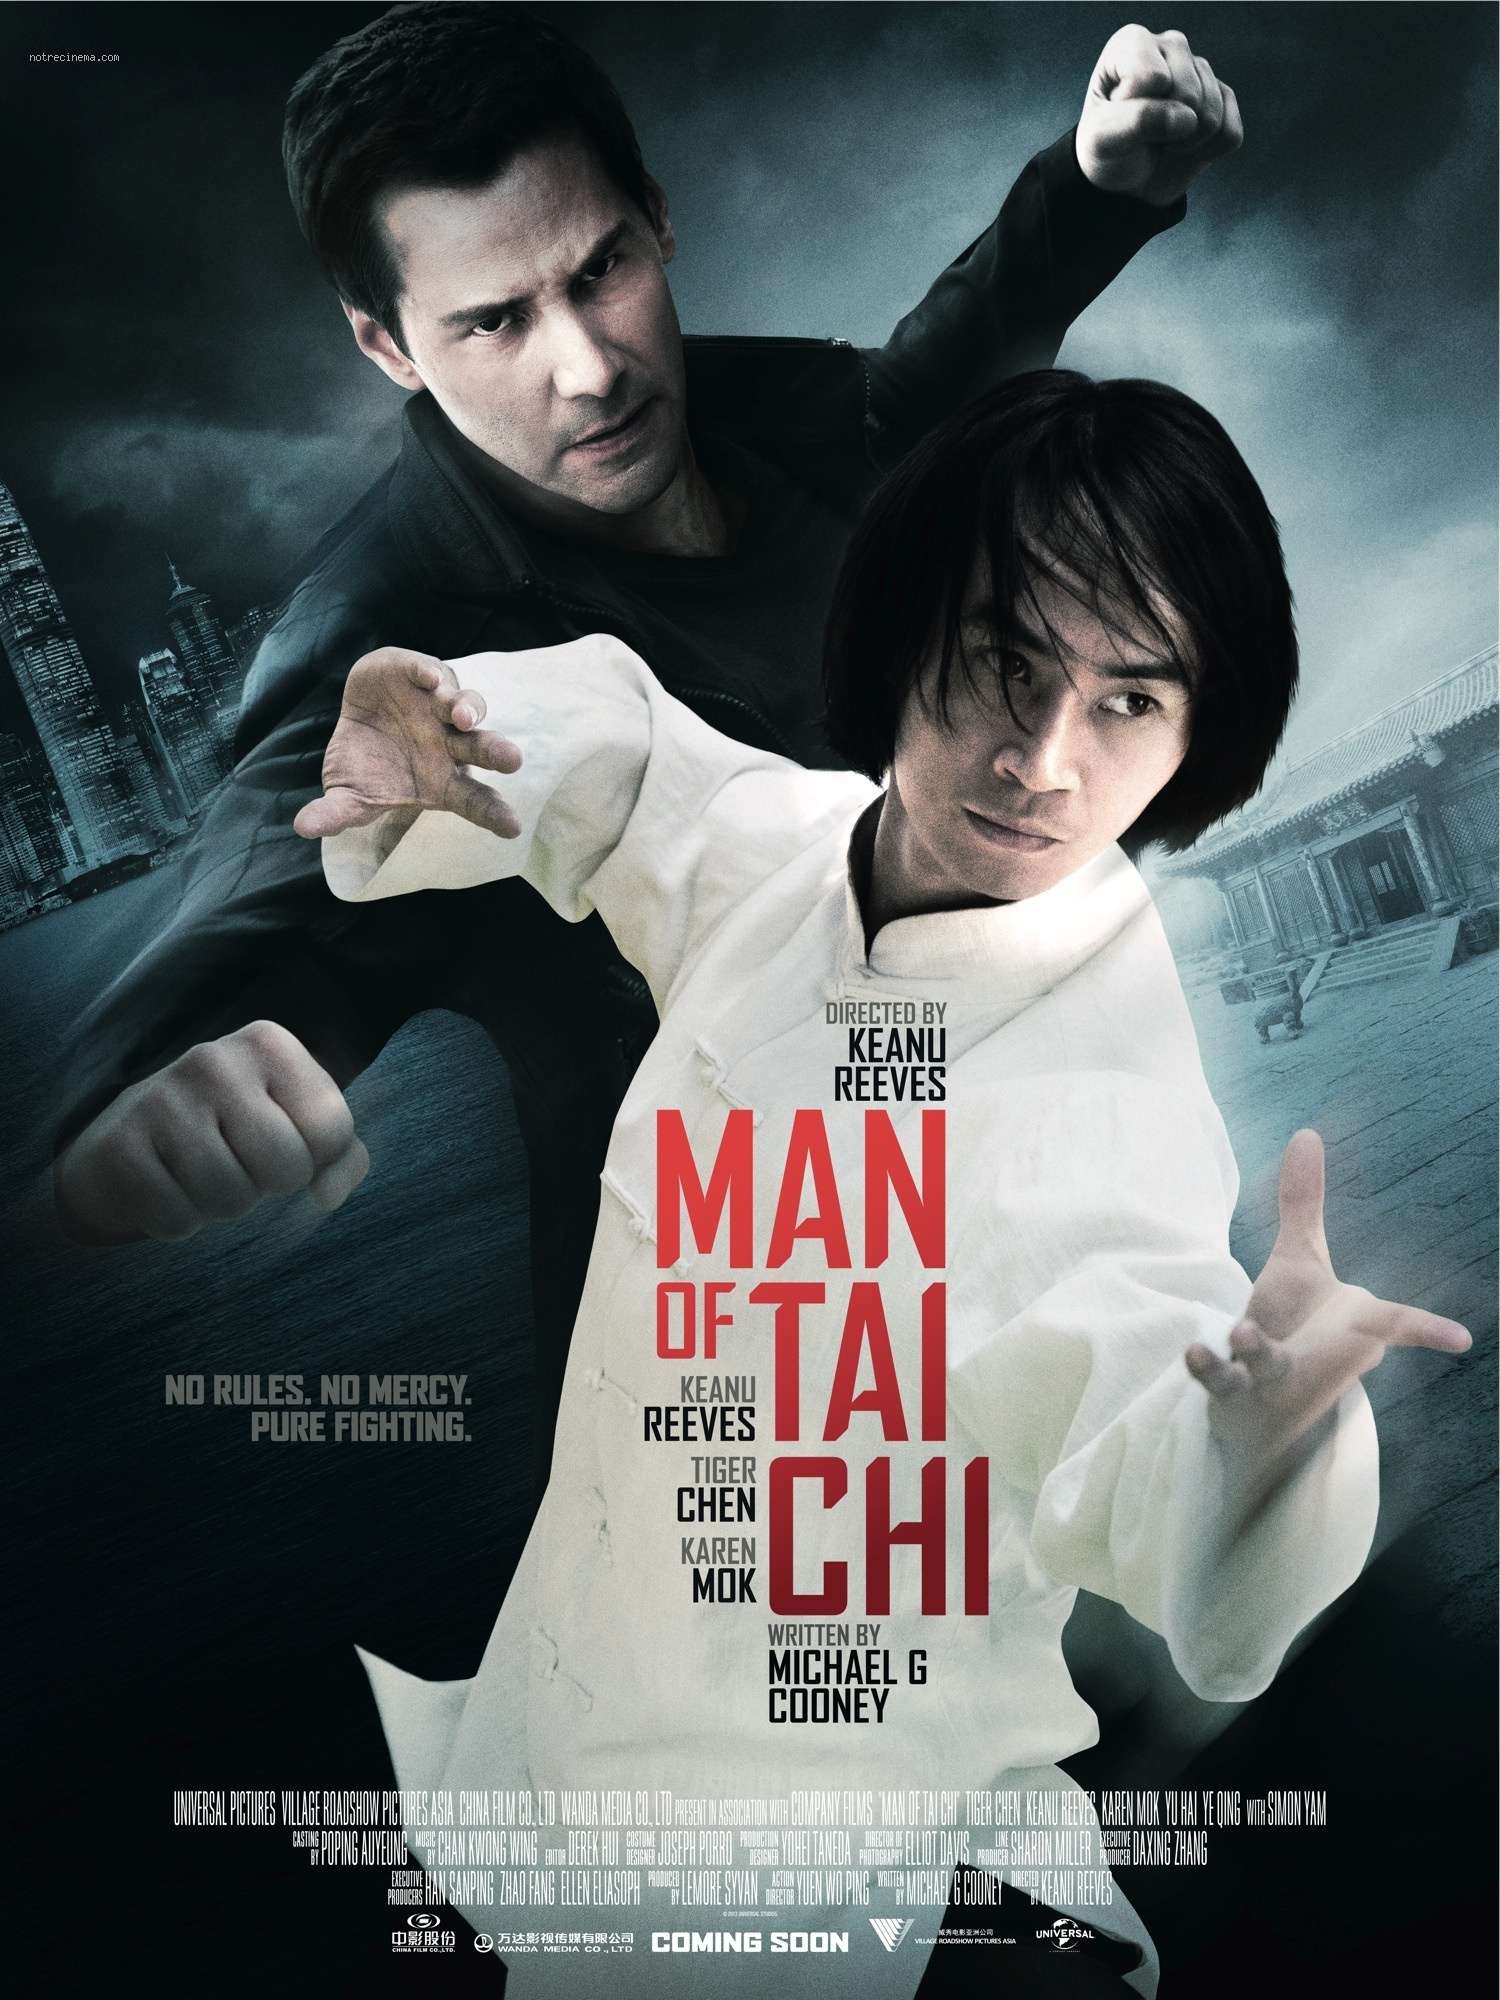 Man of Tai Chi - 2013 DVDRip XviD AC3 - Türkçe Altyazılı Tek Link indir